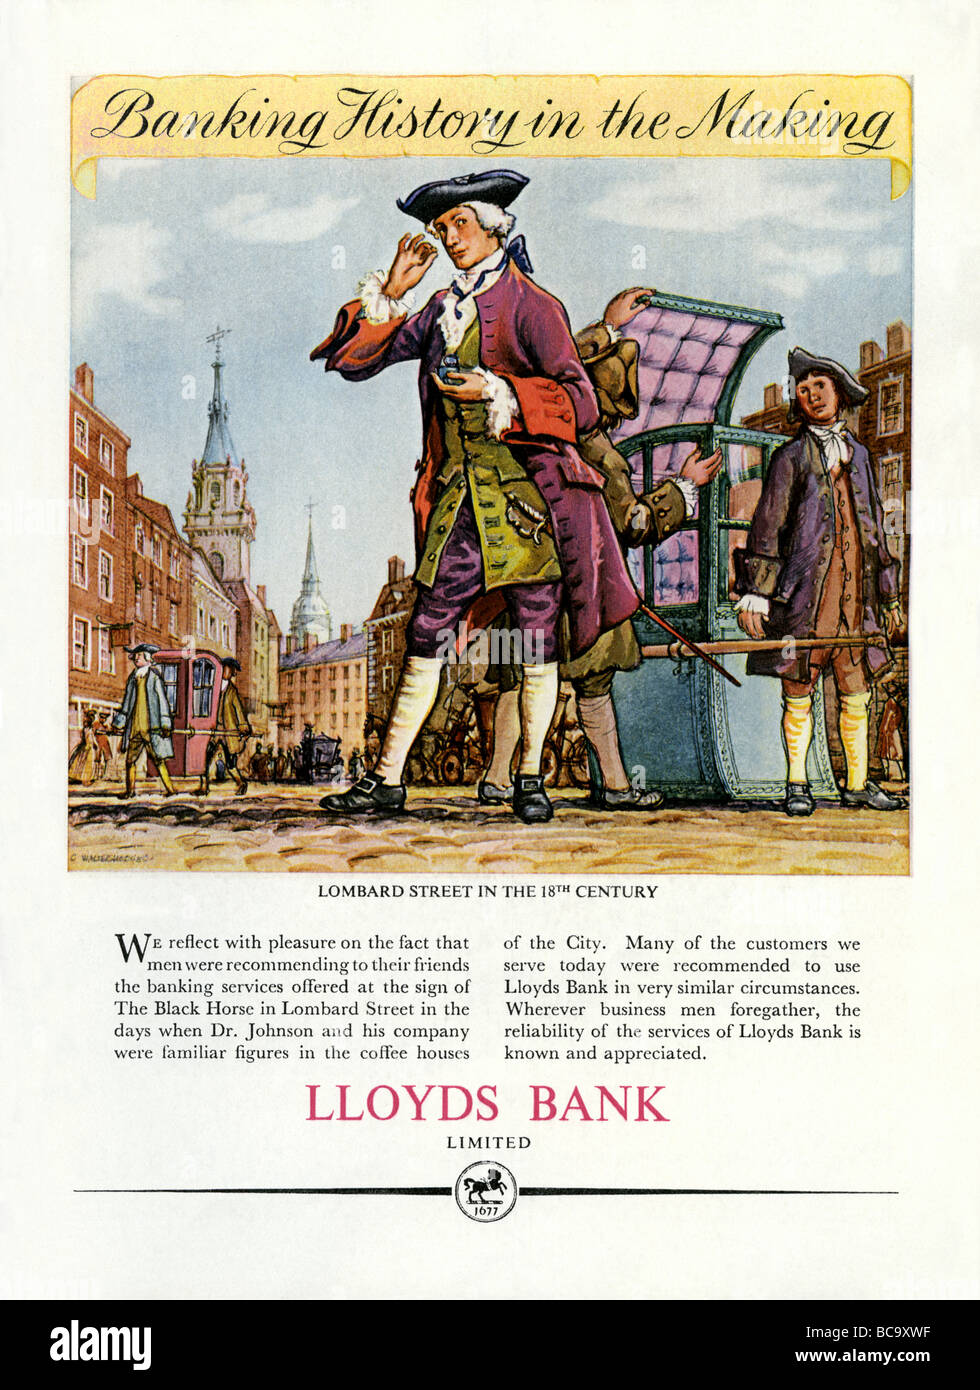 1951 colori per Lloyds Bank dispone di un diciottesimo secolo vista di un banchiere di Lombard Street, la città di Londra Foto Stock